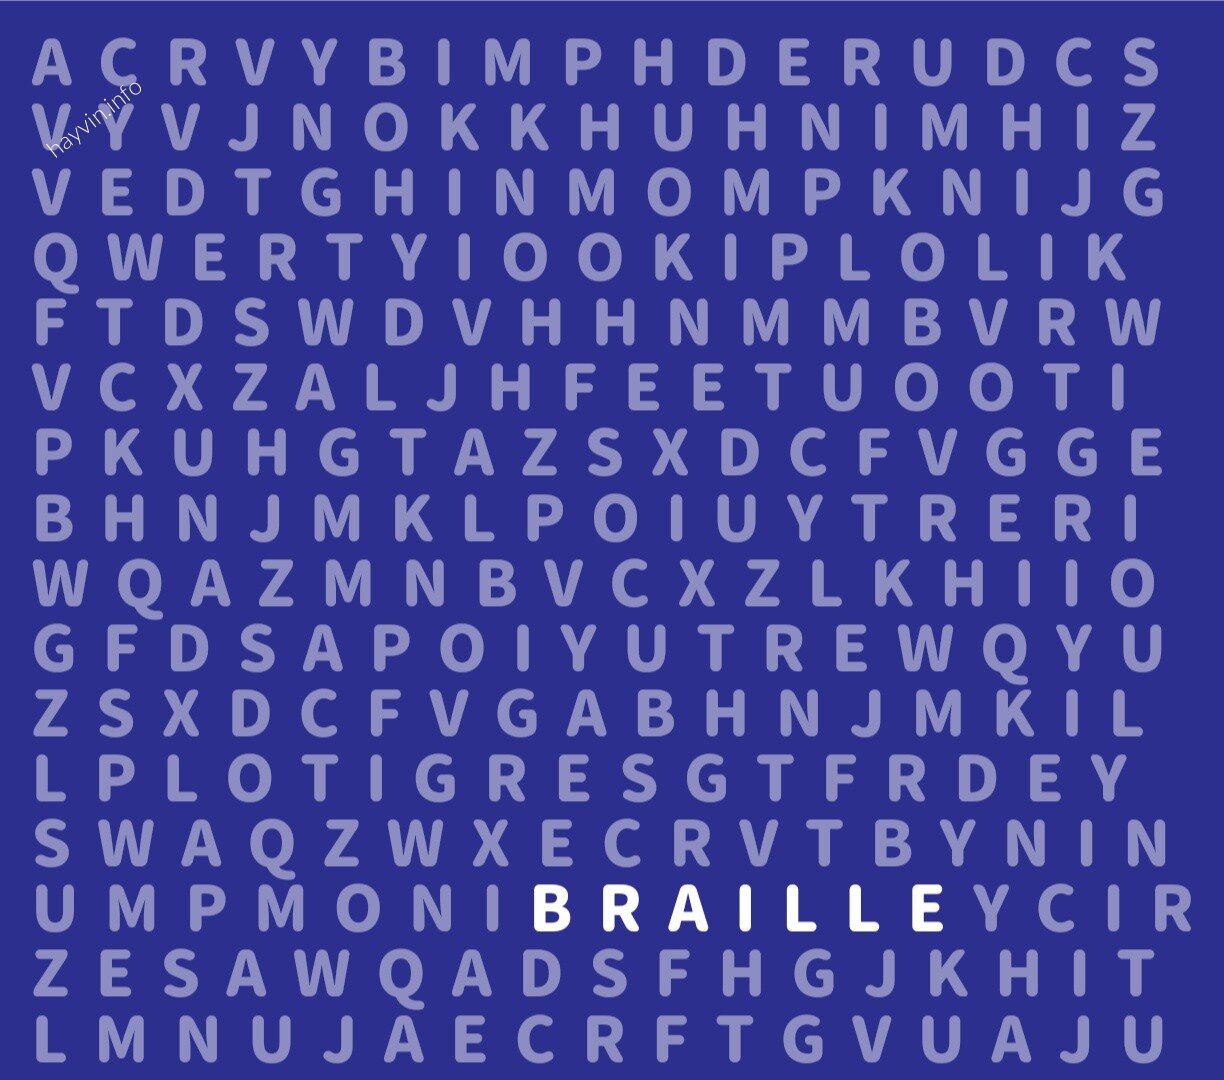 PRO vizuális rejtvény: Csak egy képzett ELME találja meg a „BRAILLE” szót az EXPERT szintű szókeresésben 8 másodperc alatt